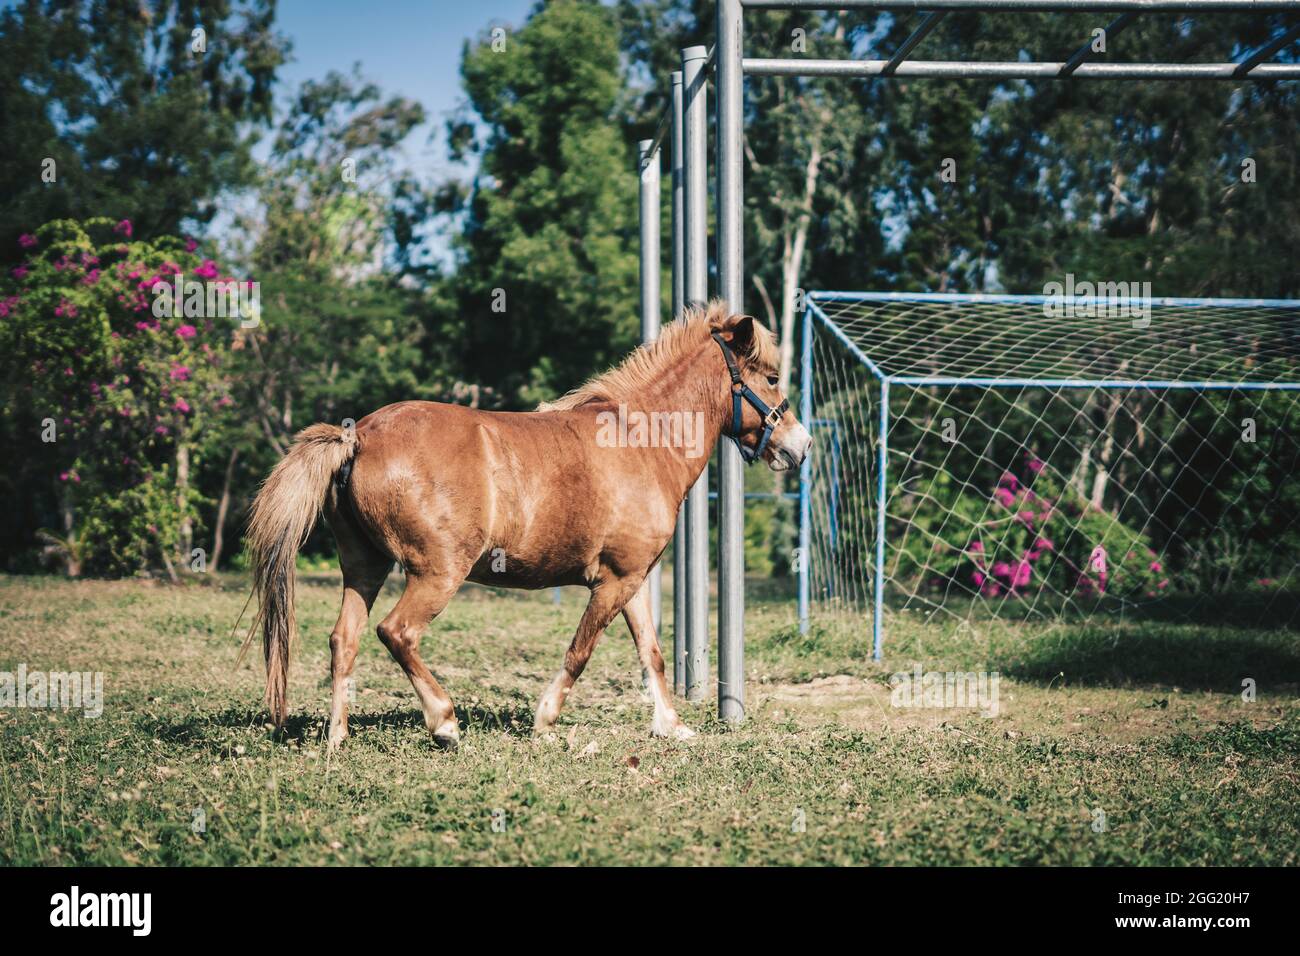 L Seite Foto hellbraun Pferd Pony spielen kräftig flottern auf Fußballfeld Gras laufen. Sommer Baum Blume Metall horizontale Bar Hintergrund Stockfoto